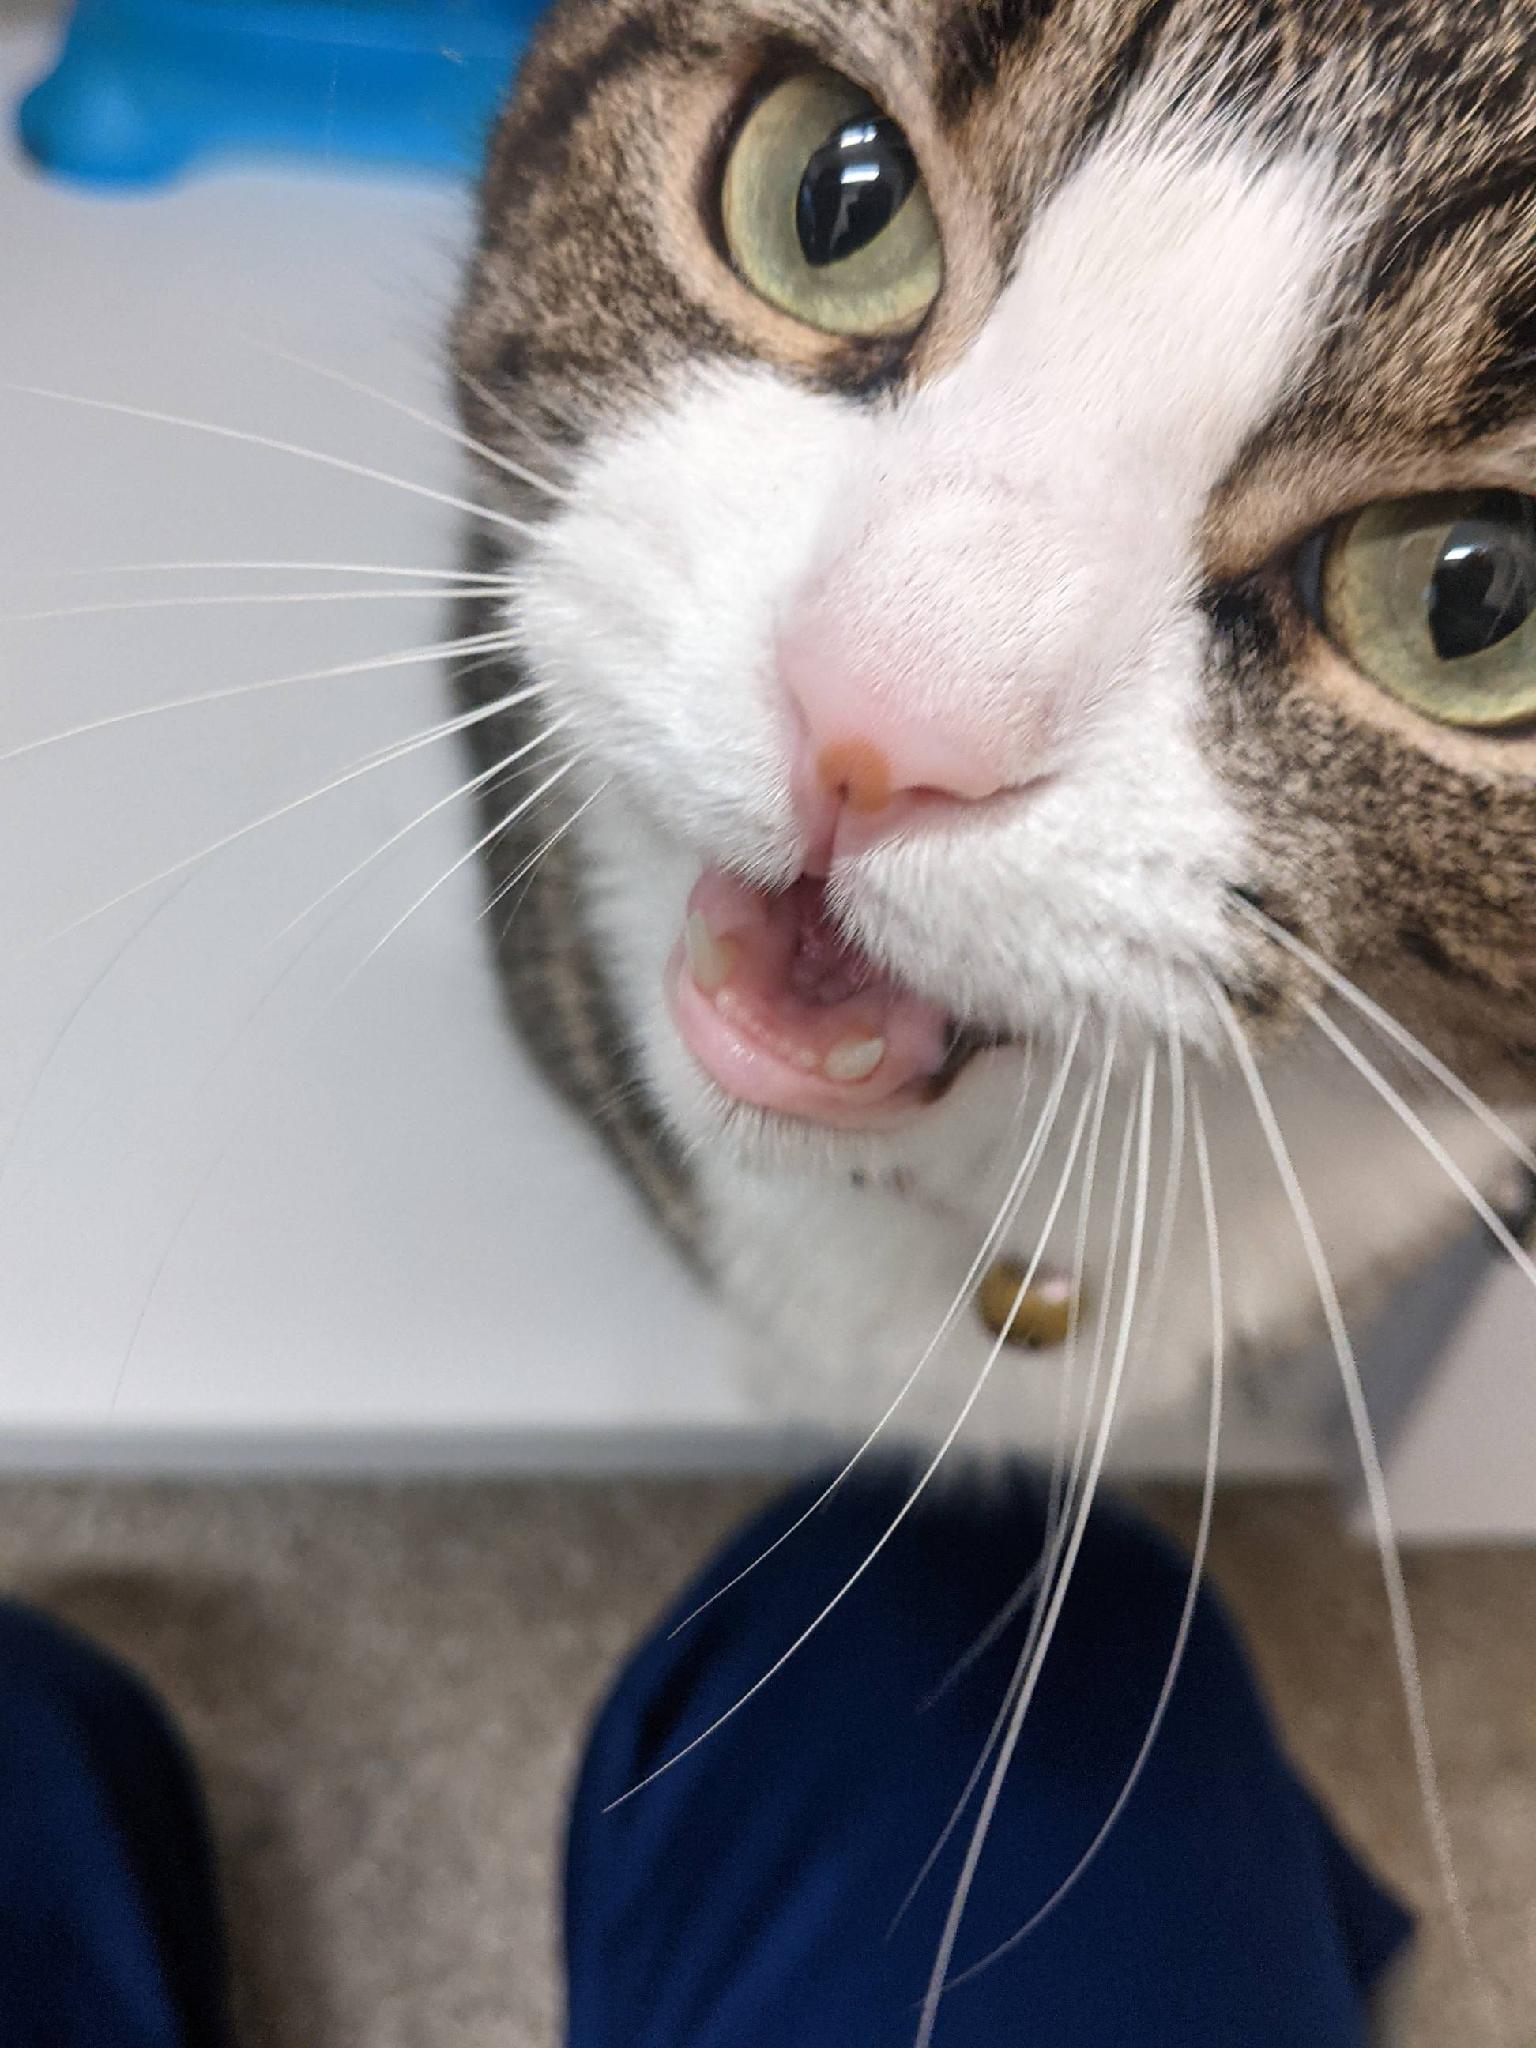 Rosie named cat in vet clinic